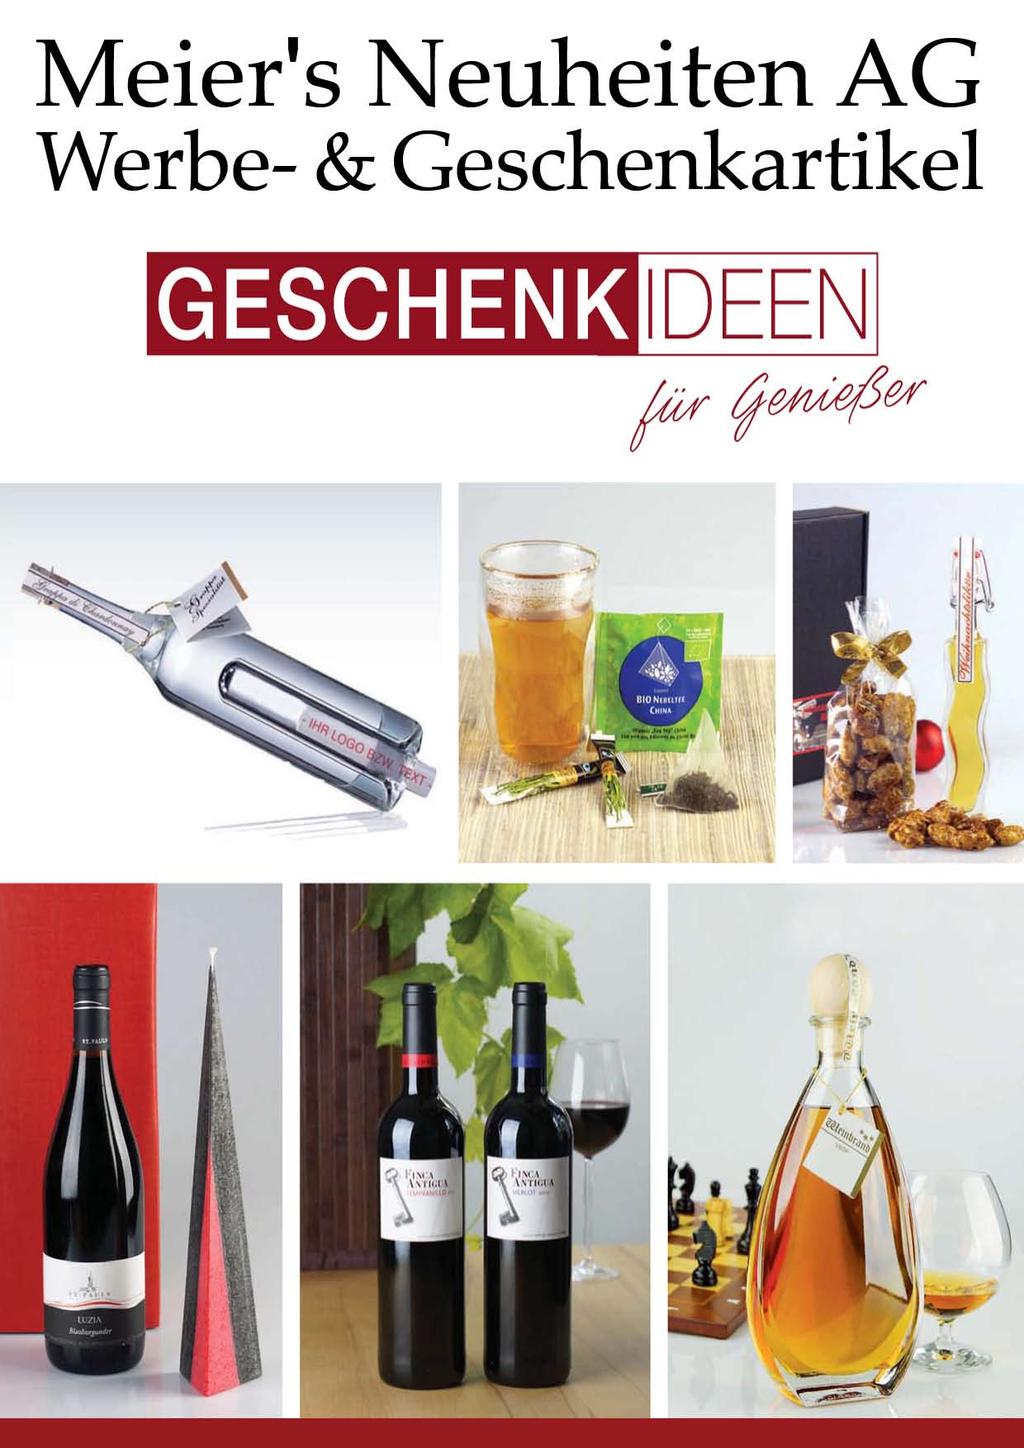 10 x Glas Flasche Herz 0,1 Liter Liebe Schnaps Likör Geschenk Kugel Kork 